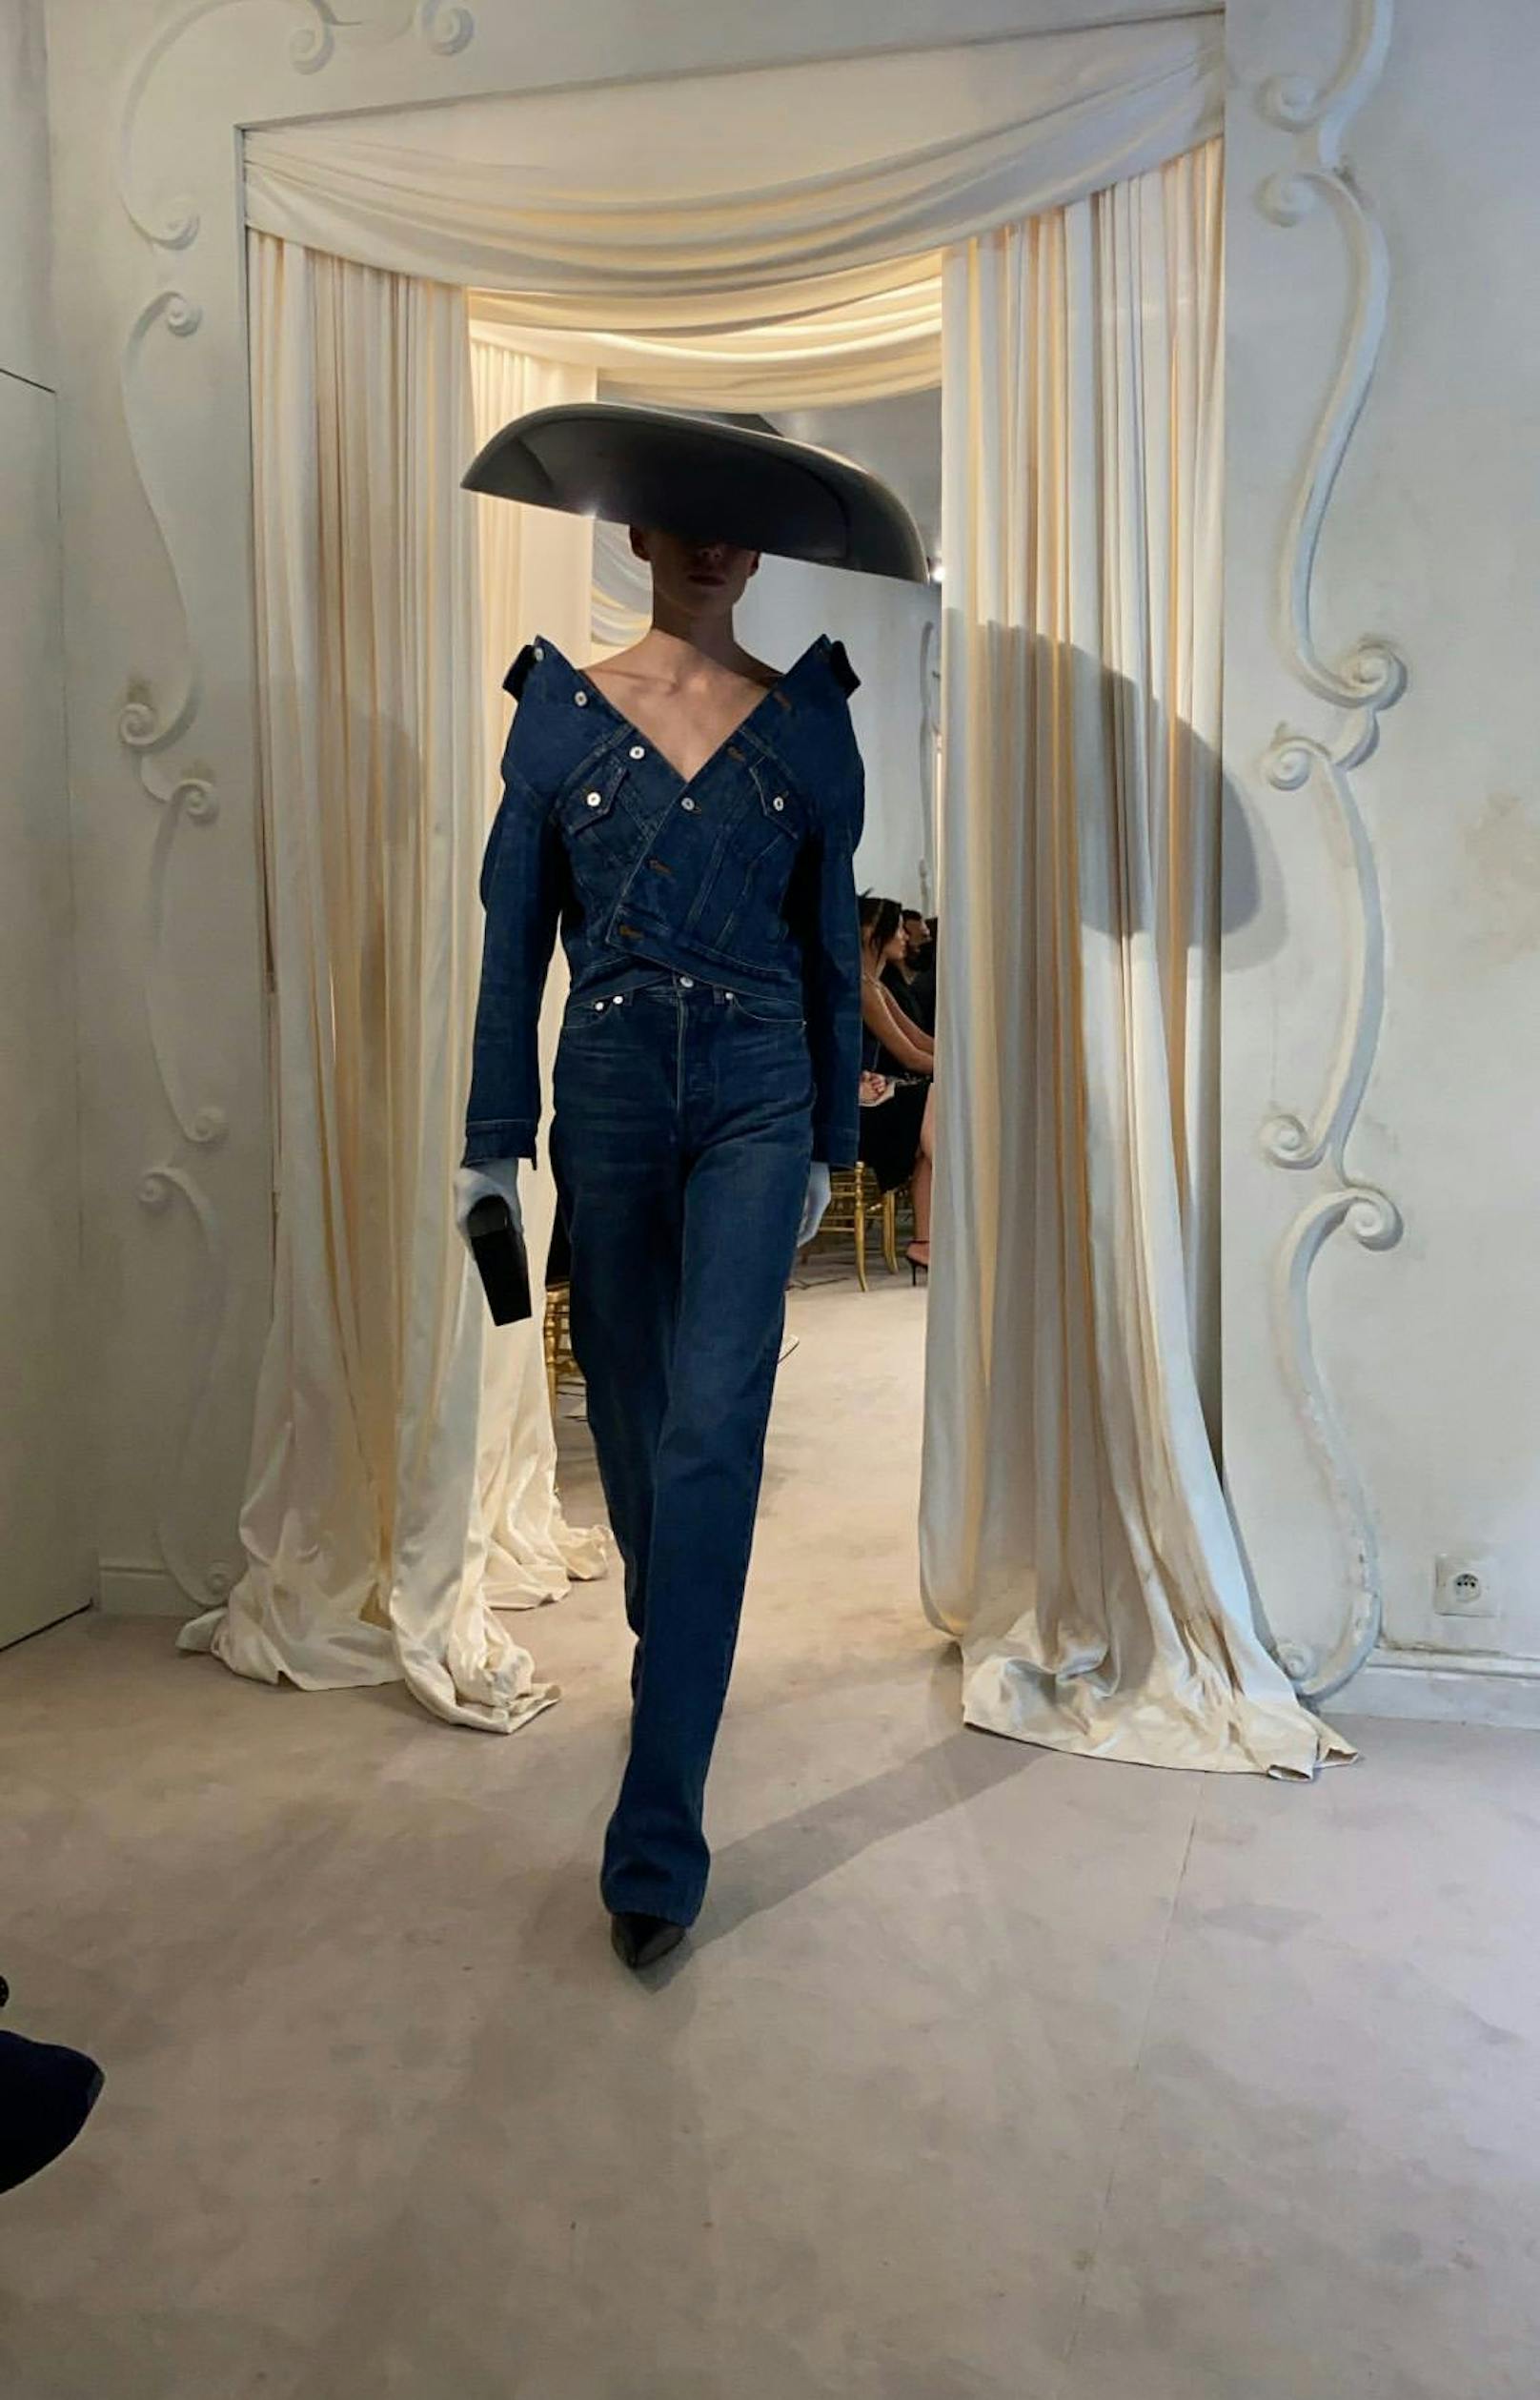 "Heute"-Herausgeberin Dr. Eva Dichand war bei der Präsentation der neuen Couture-Kollektion von Balenciaga in Paris zugegen und schoss die ersten Fotos aus der Front Row.